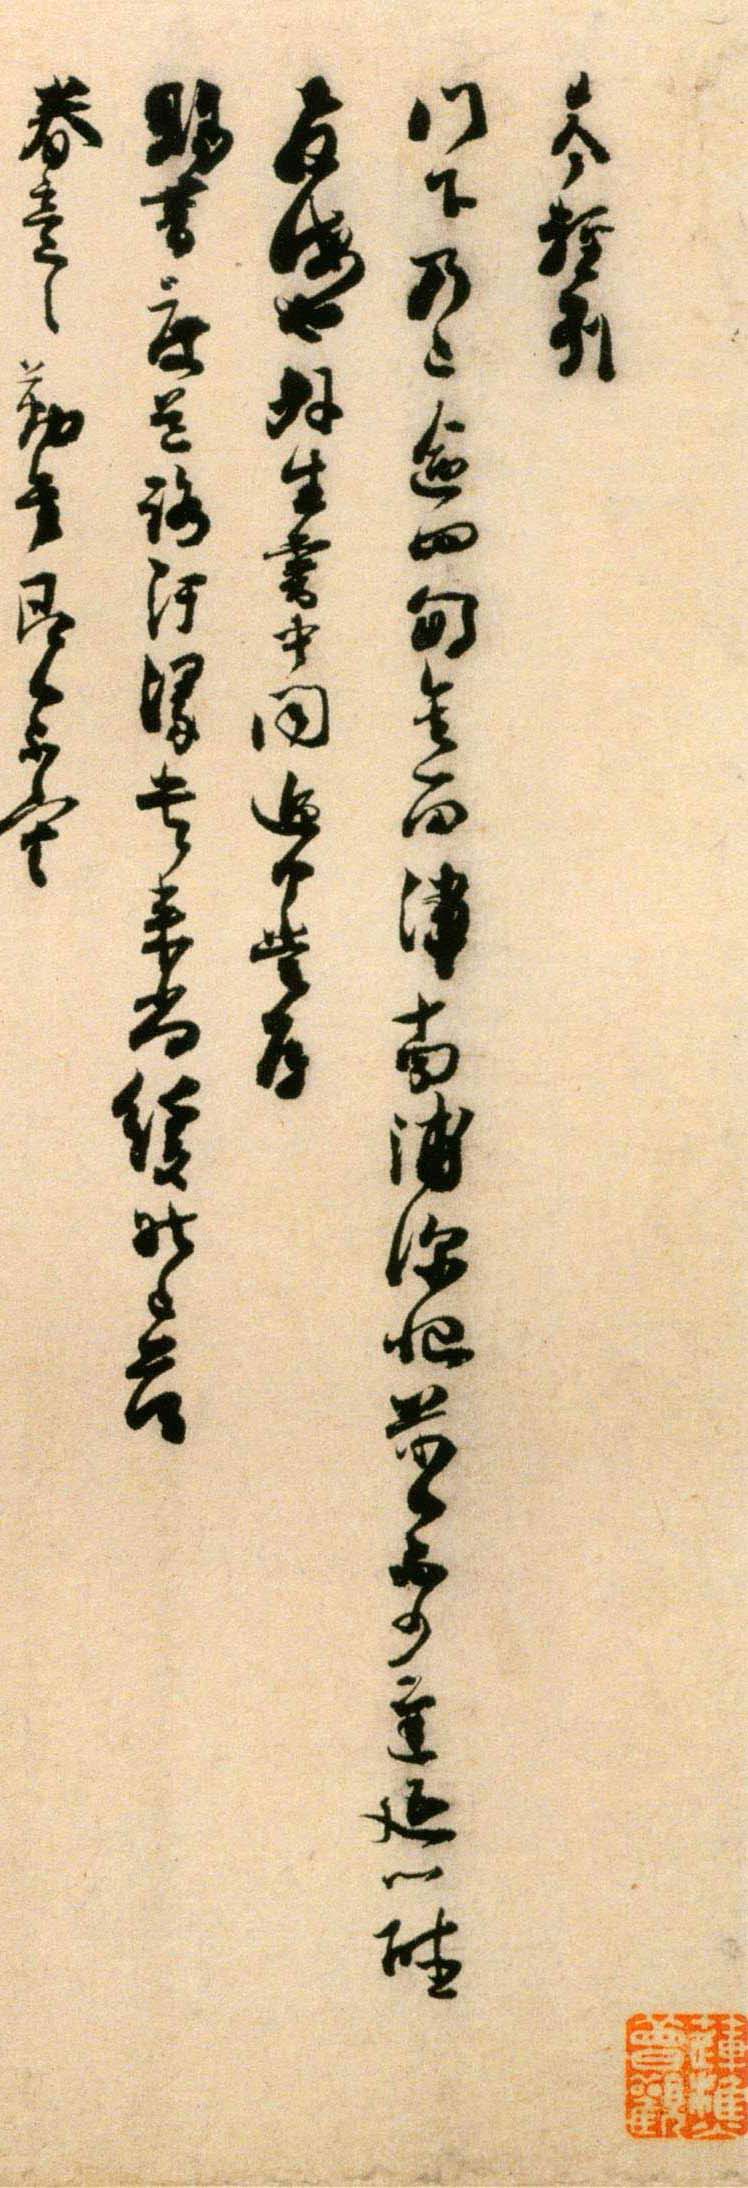 刘岑草书《门下帖》-北京故宫博物院藏(图2)